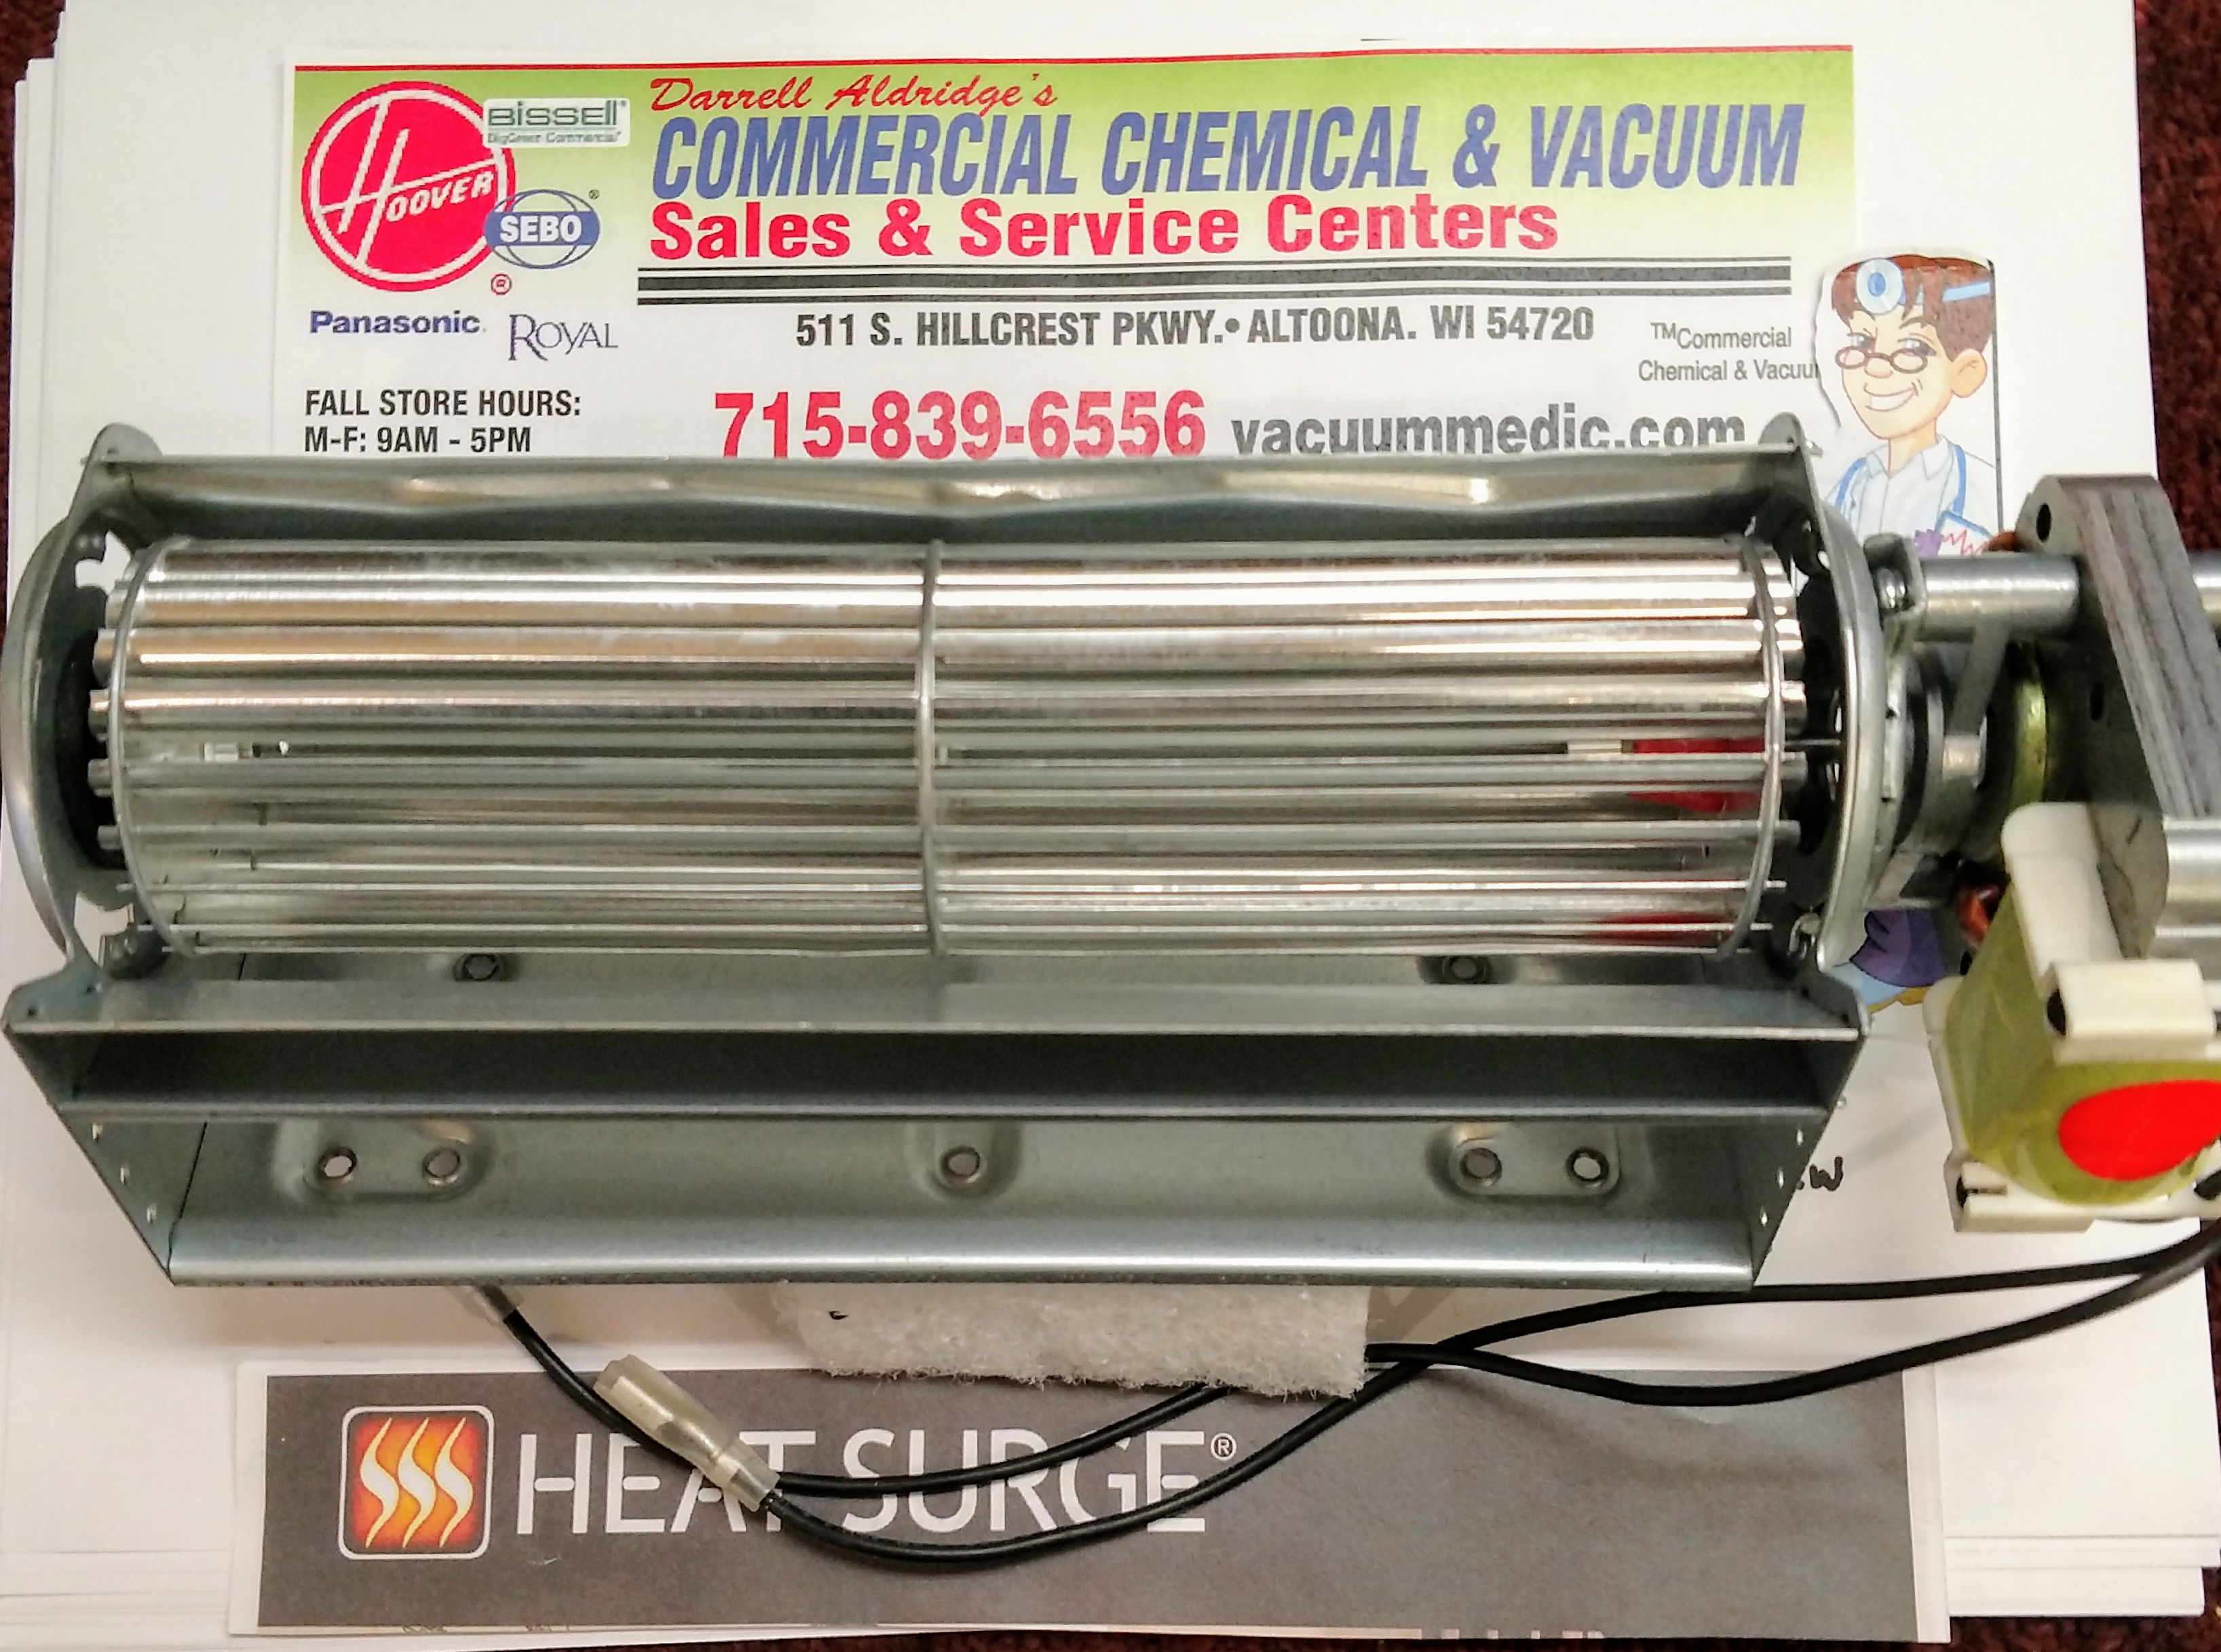 Heat Surge W-5 Blower Fan With Motor High Volume